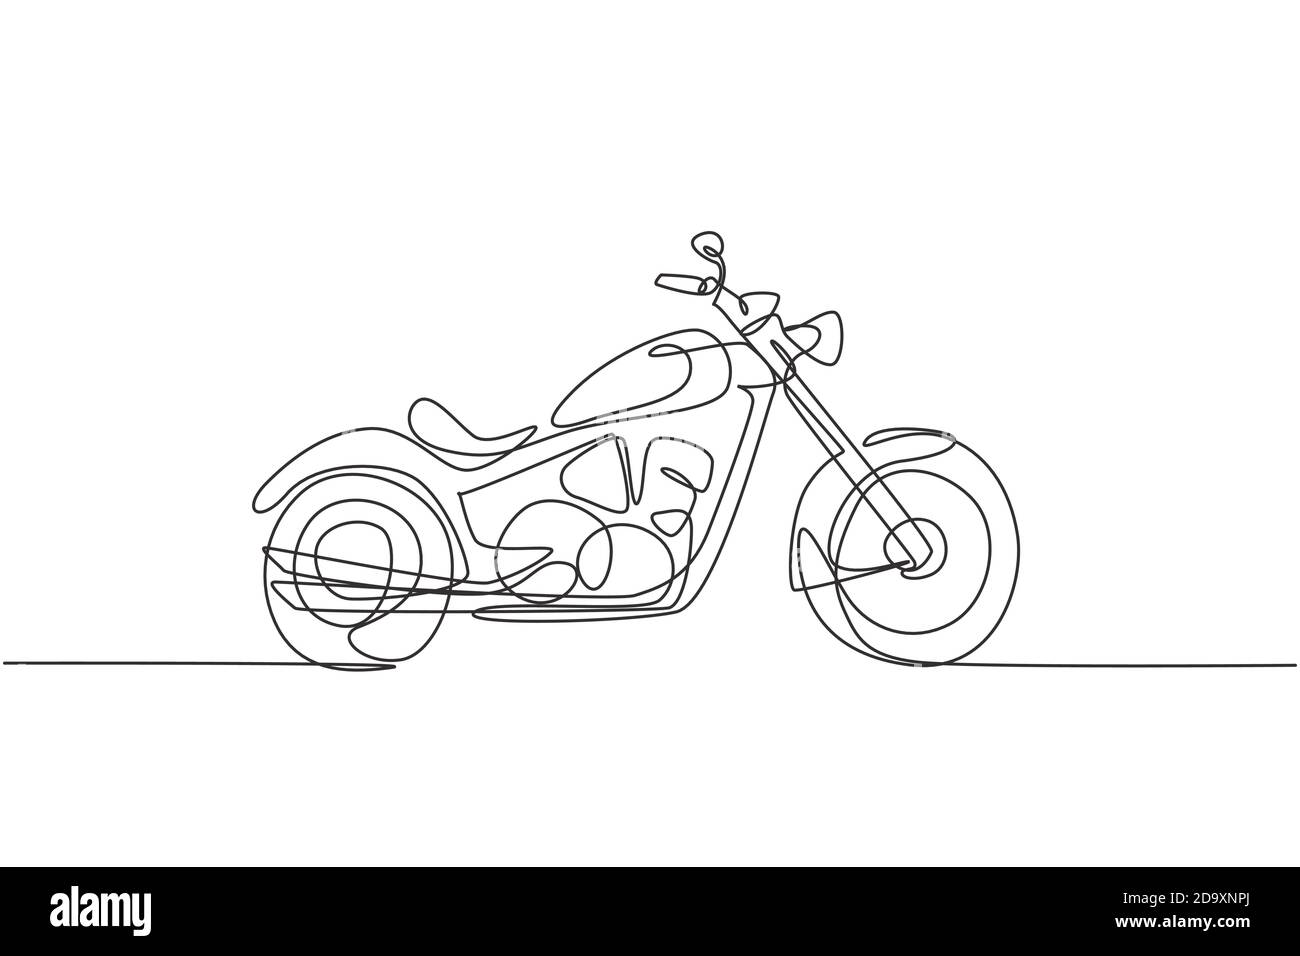 Un dessin d'une seule ligne d'une ancienne moto rétro vintage. Vintage moto  transport concept ligne continue dessin design illustration vectorielle  Image Vectorielle Stock - Alamy